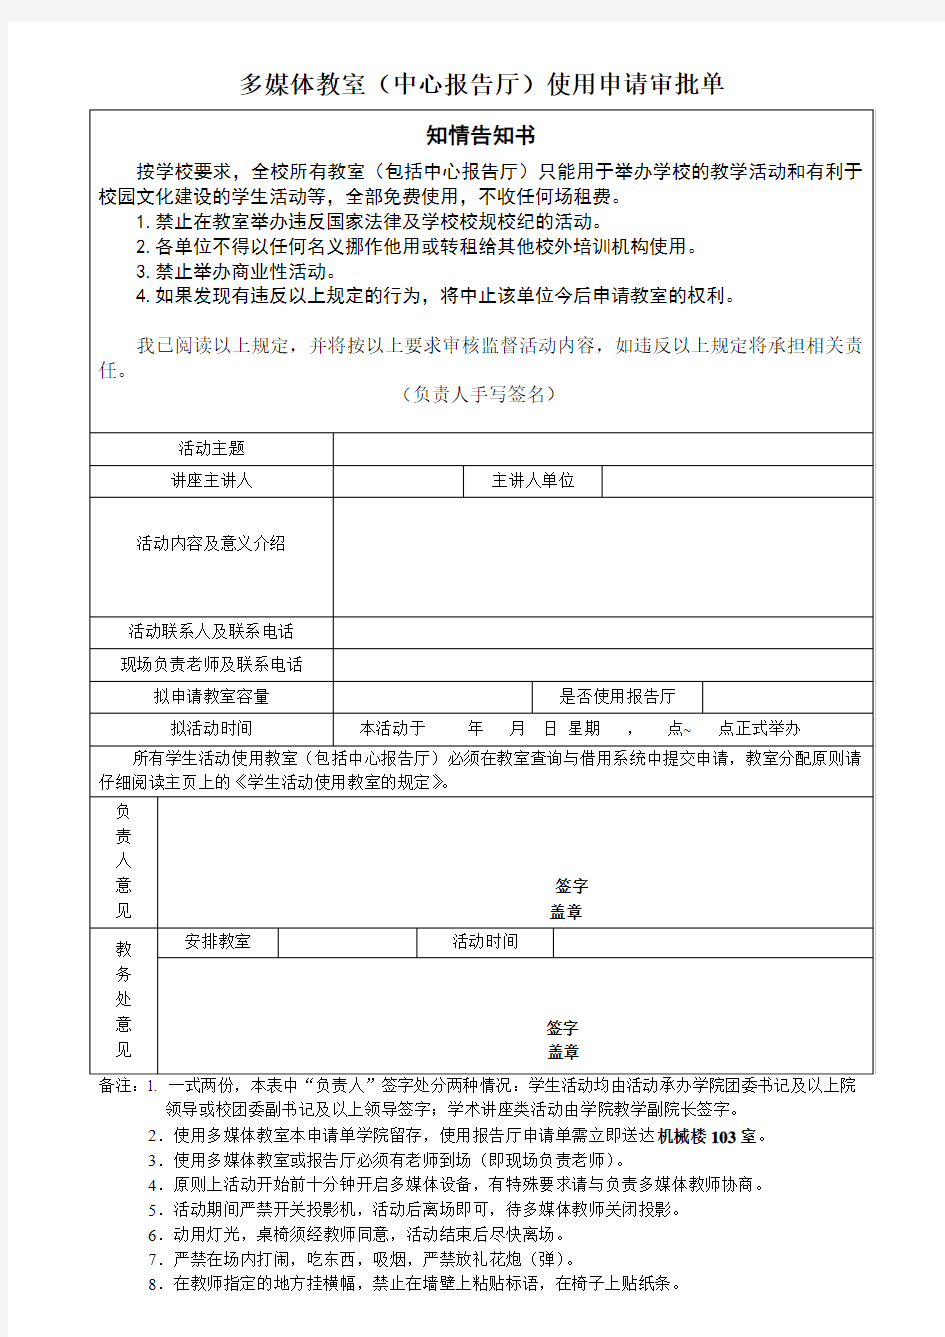 北京交通大学多媒体教室&中心报告厅使用申请表